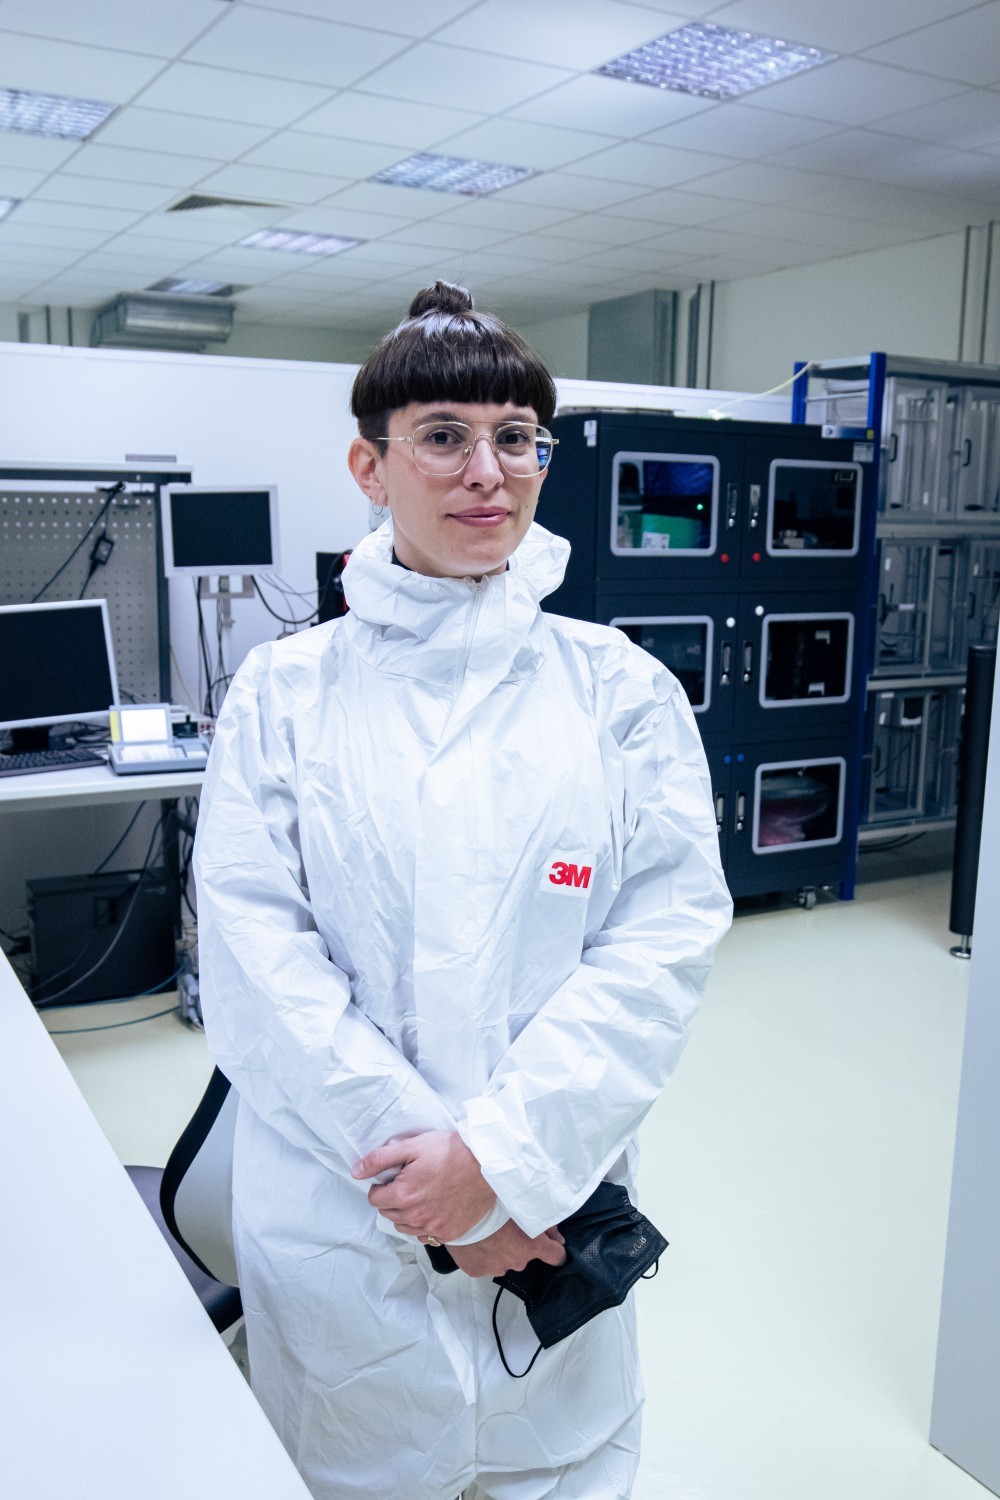 Chloé Delarue at the Silicon Detectors facility. Photo by Franciska-Leonora Toeroek © CERN